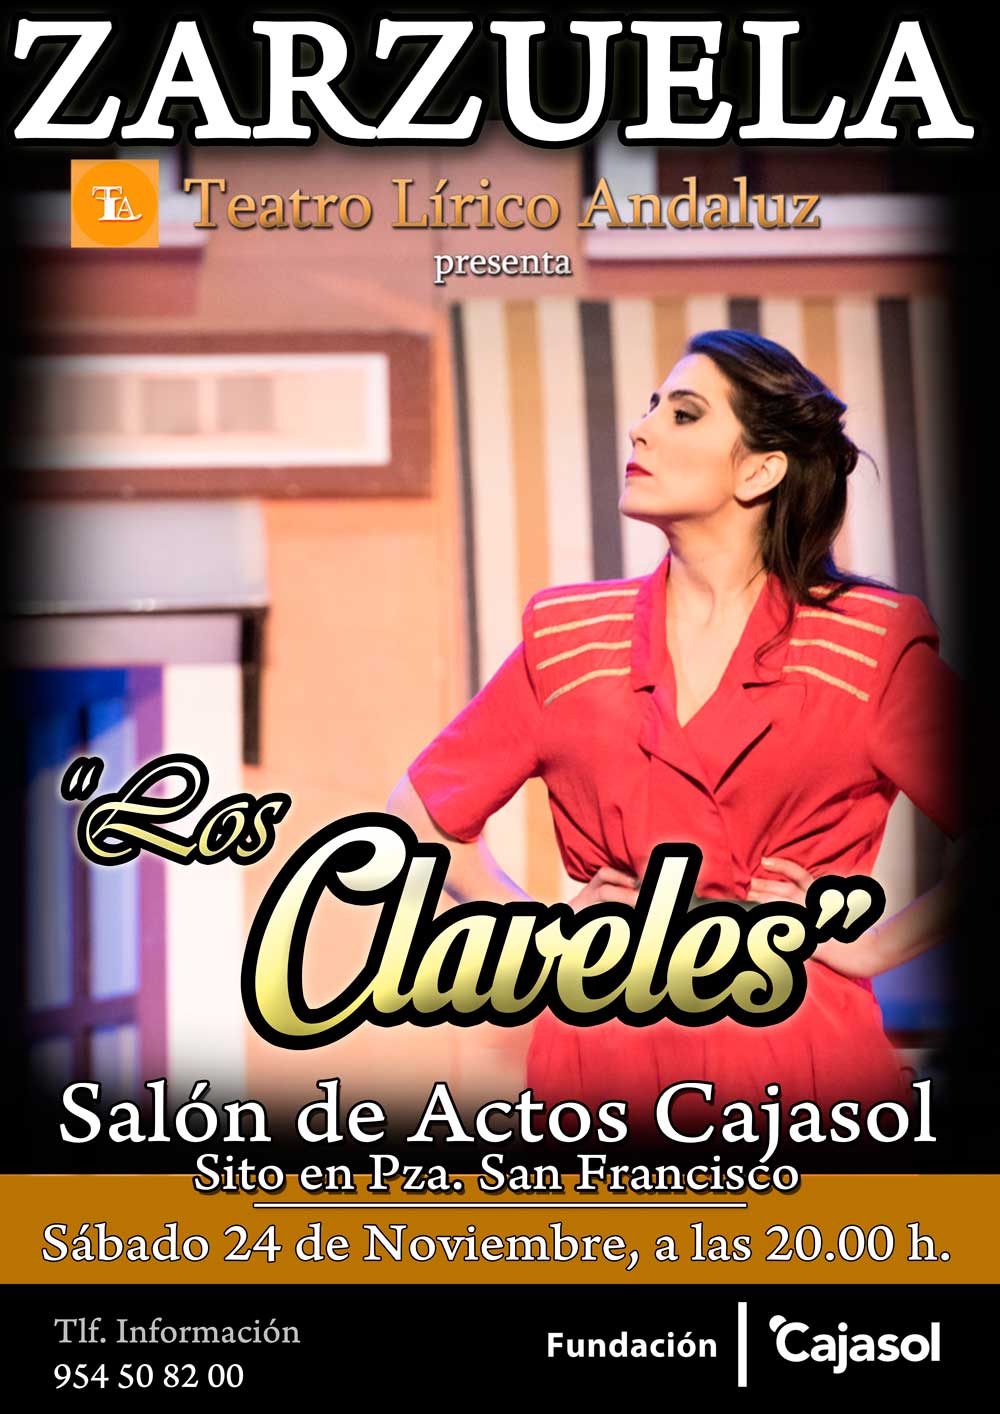 Cartel de la zarzuela 'Los Claveles' en Sevilla